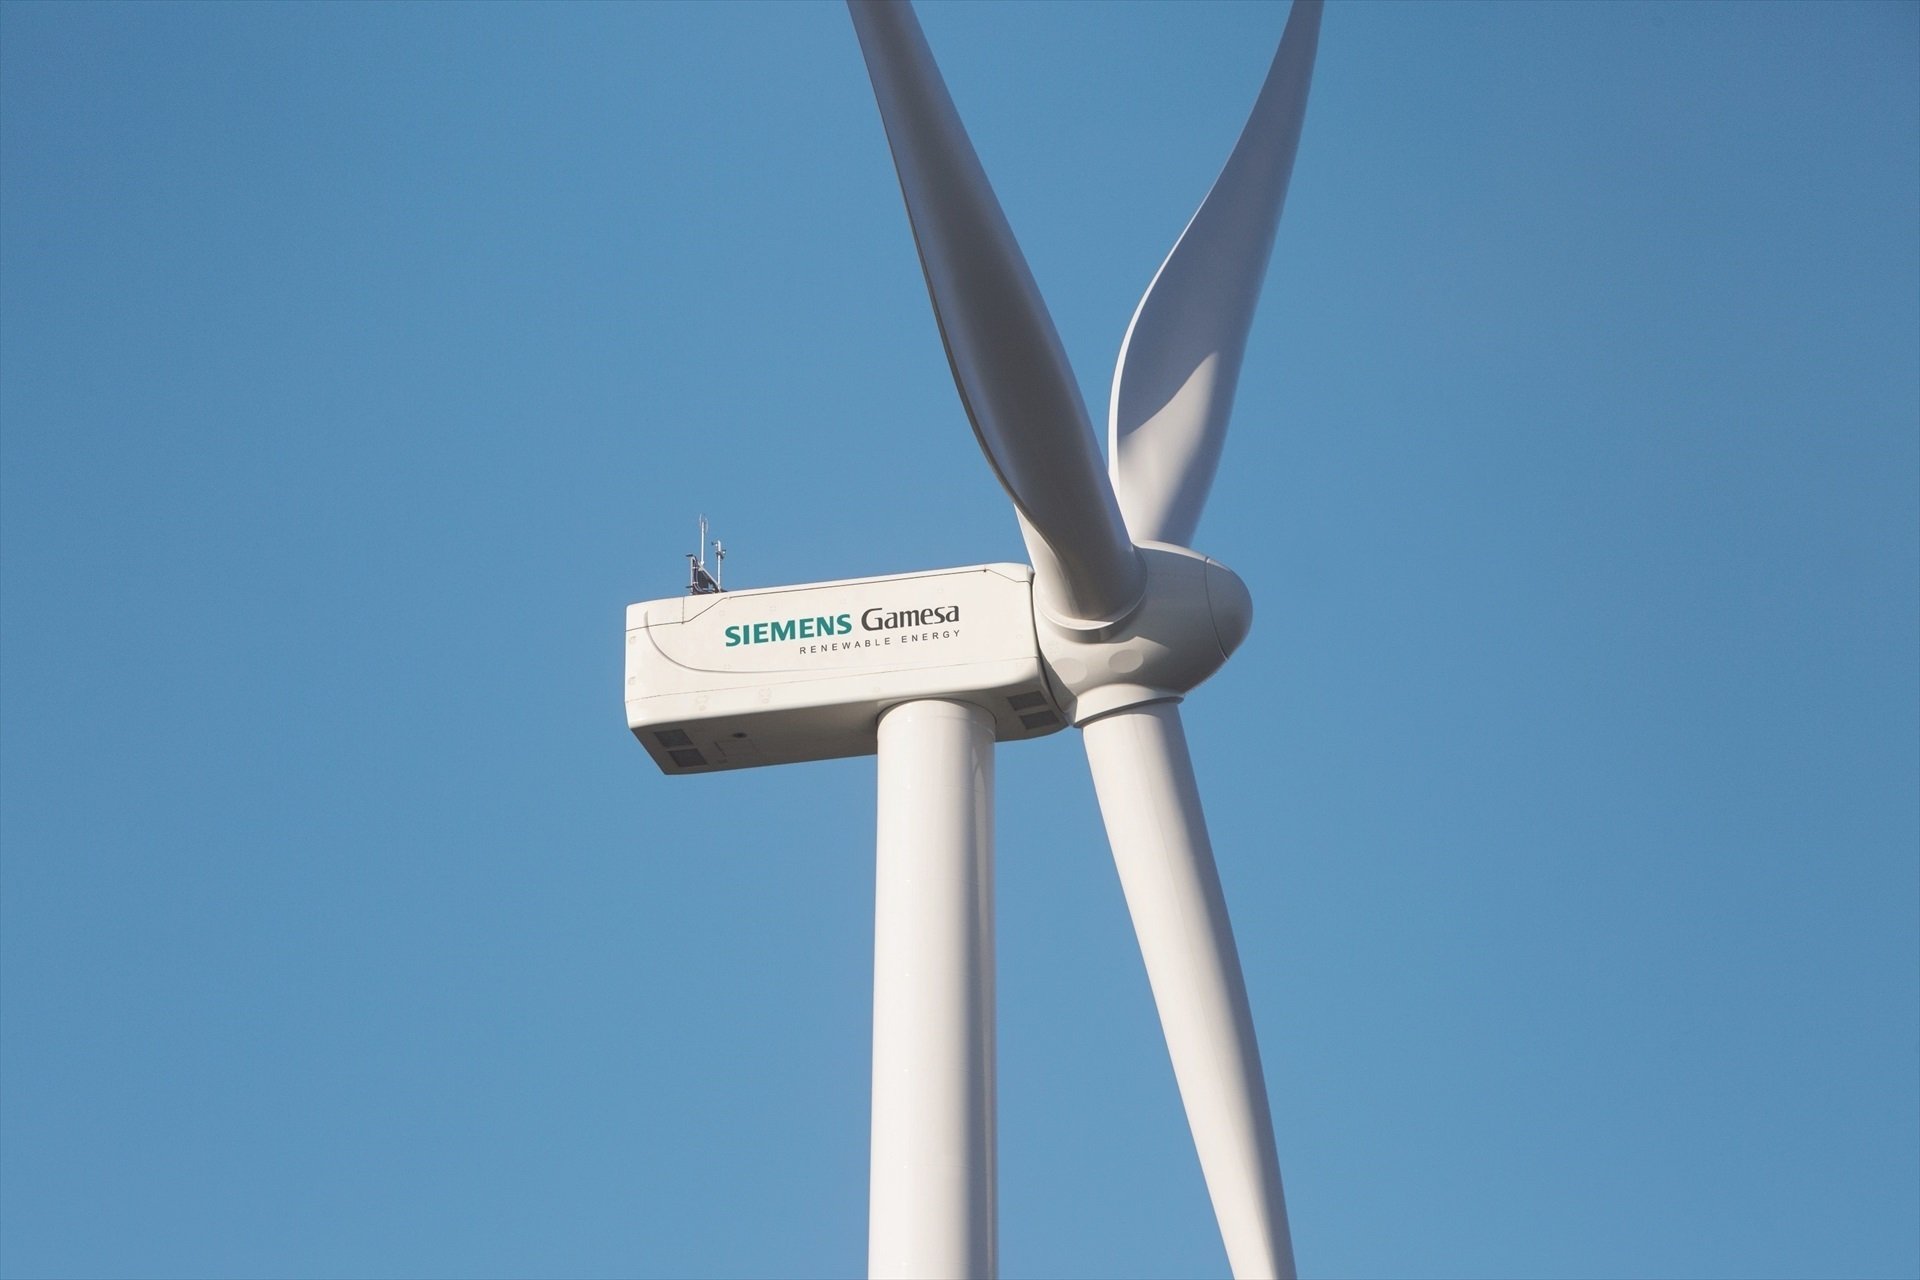 Repsol compra 40 turbines a Siemens Gamesa per a sis dels seus parcs eòlics